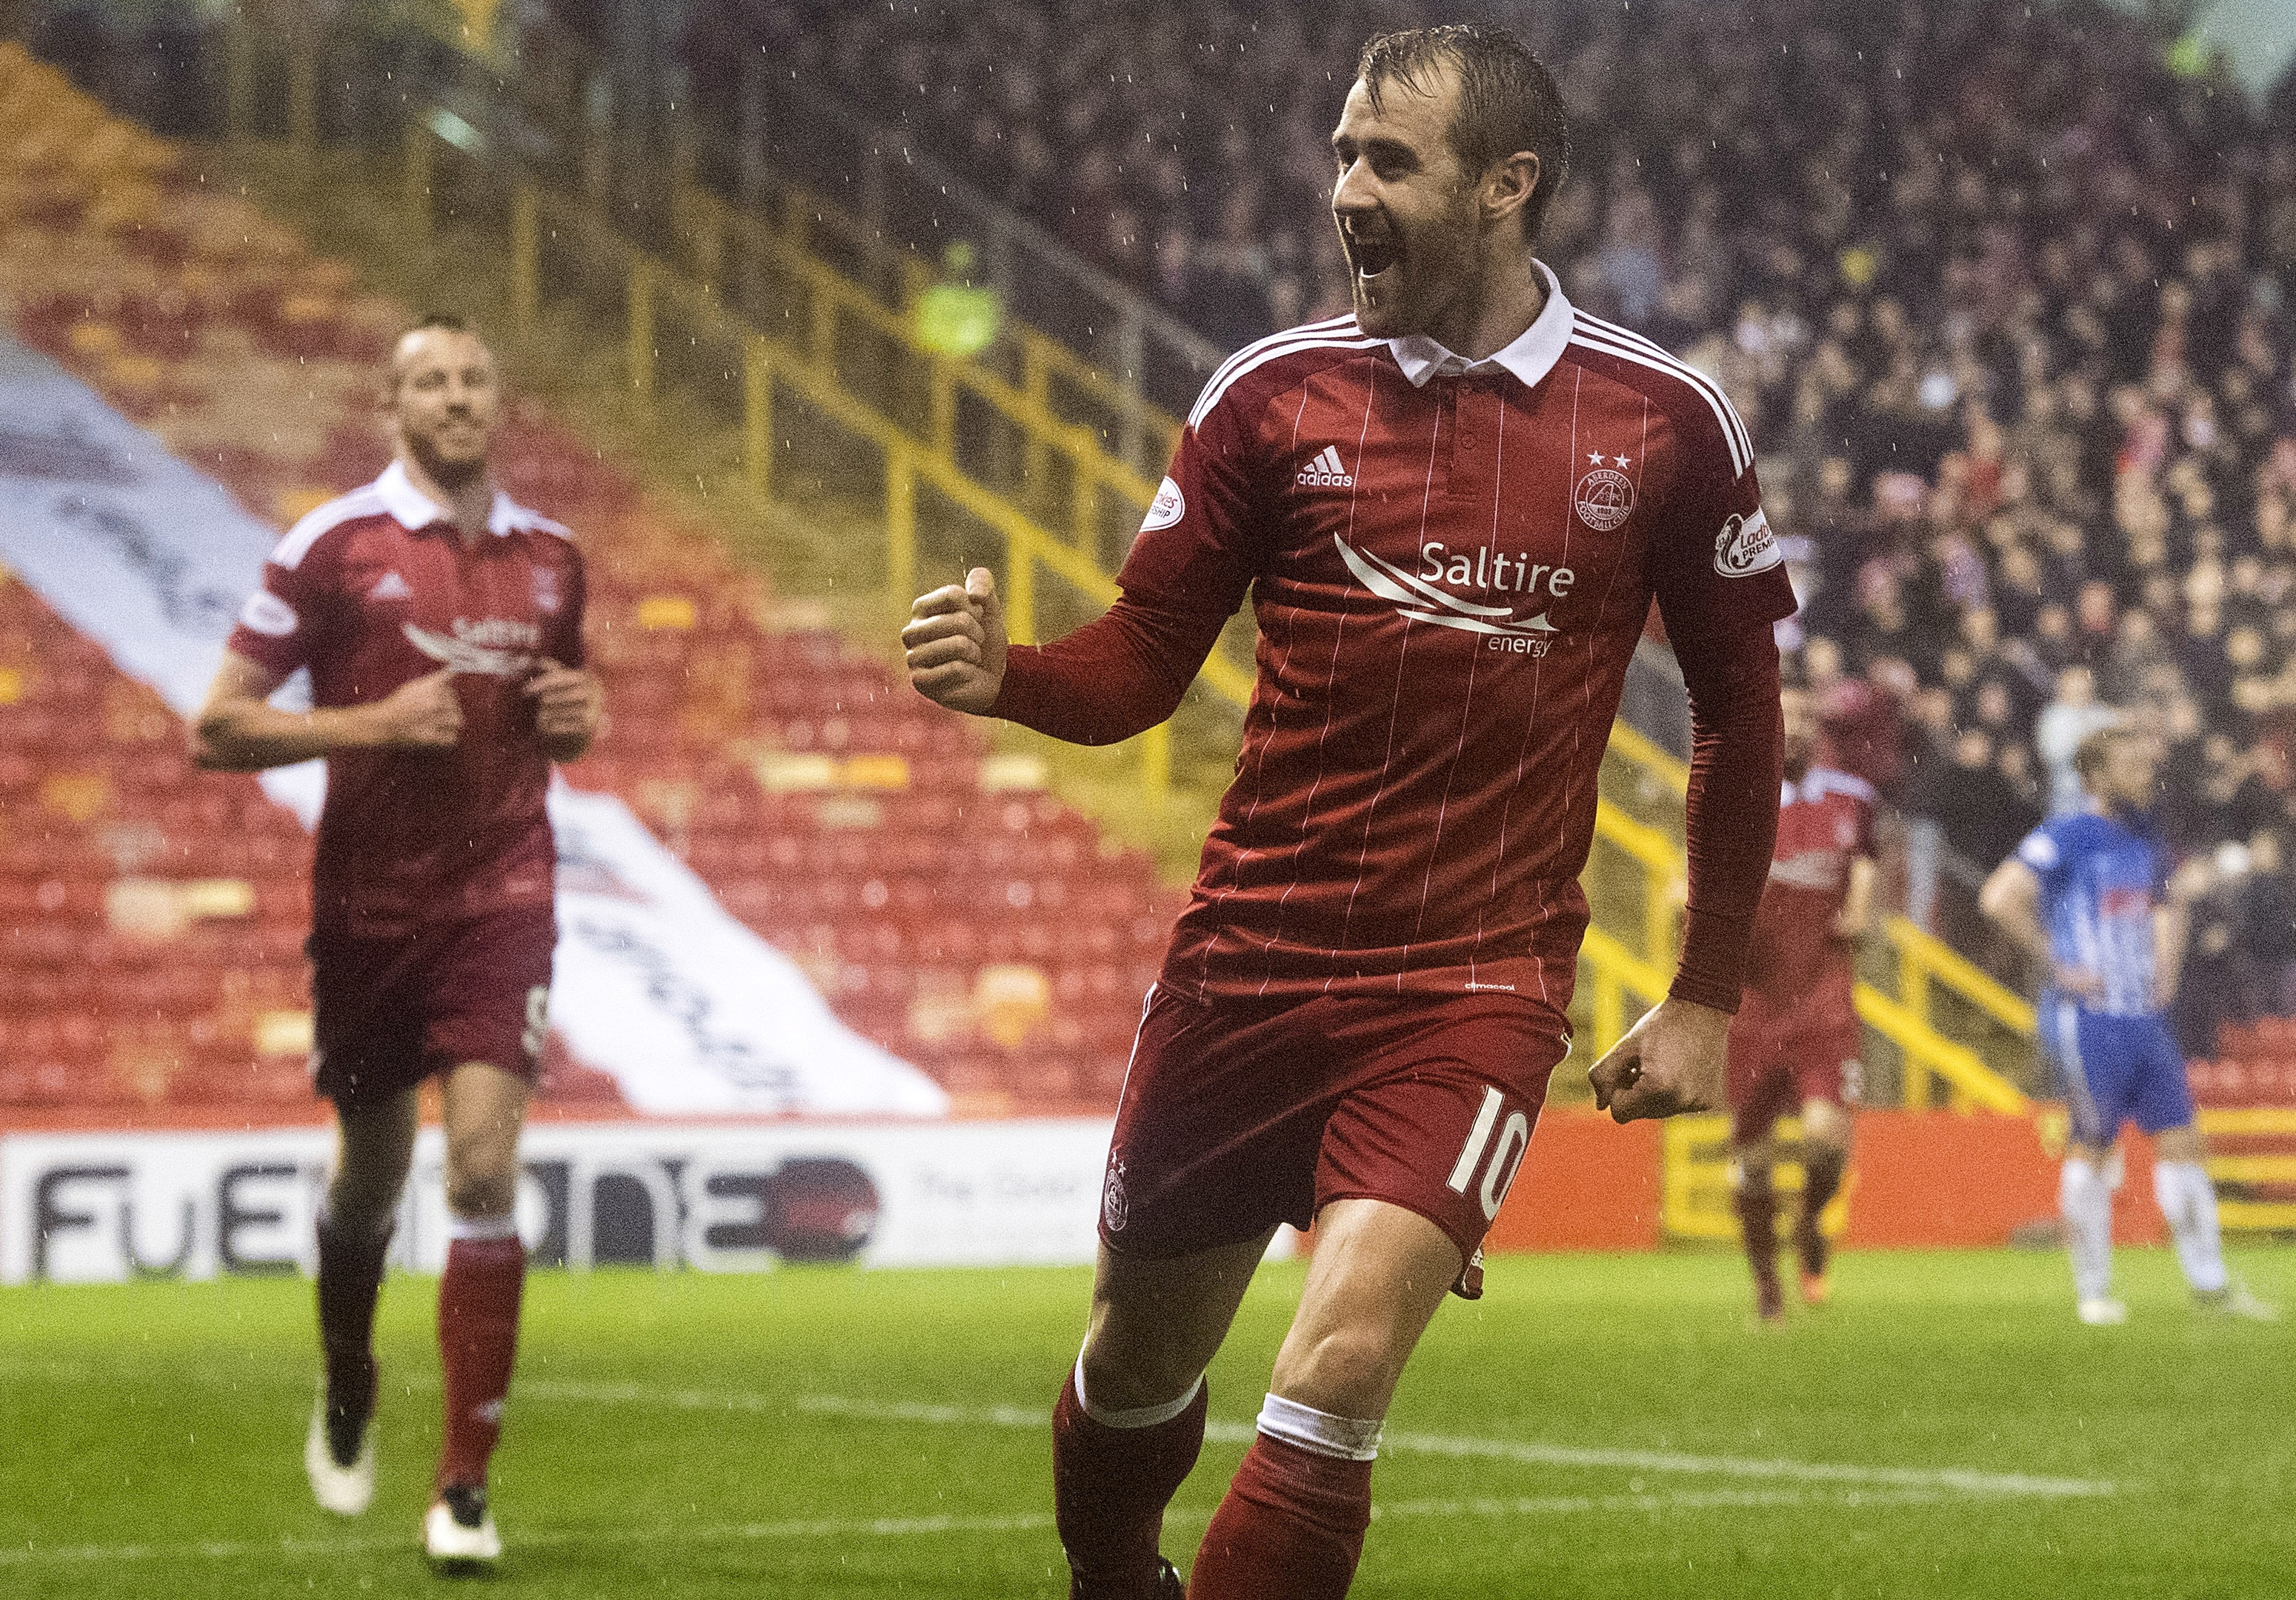 Aberdeen's Niall McGinn celebrates after scoring